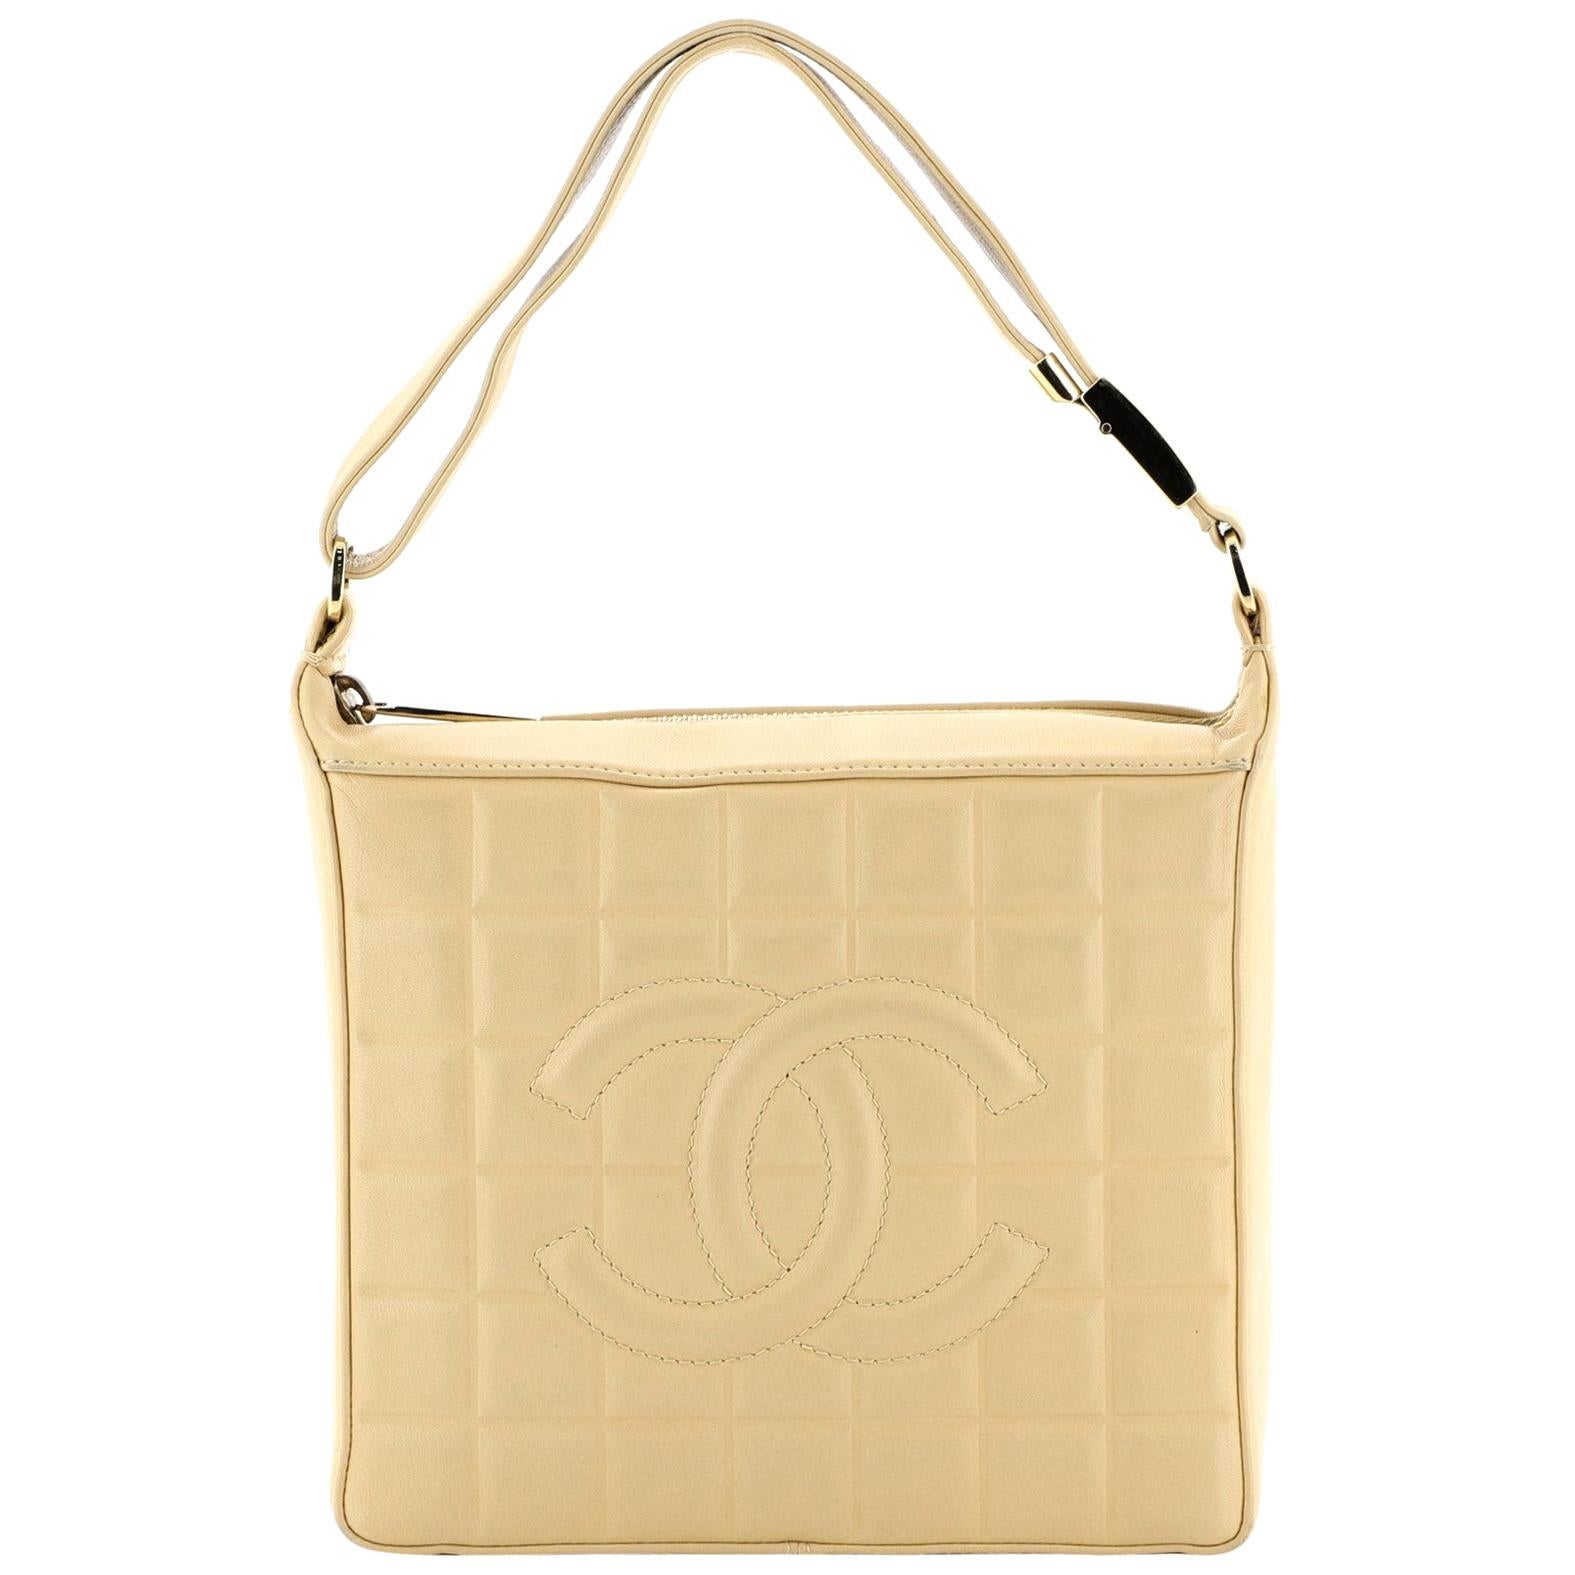 Chanel Leather Tassel Bag